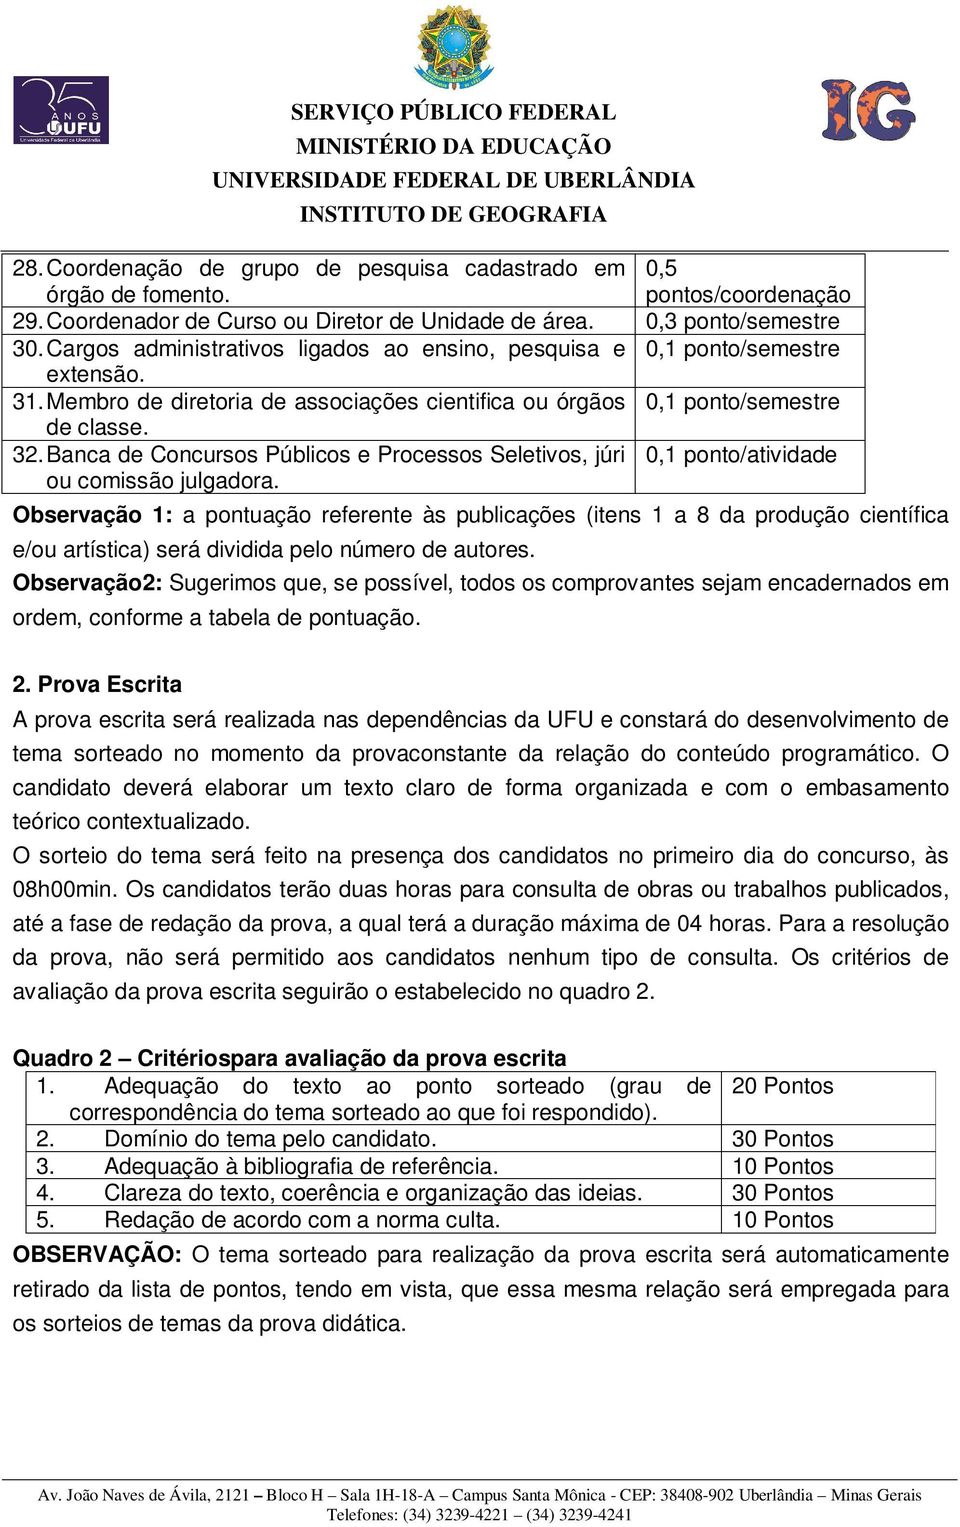 Banca de Concursos Públicos e Processos Seletivos, júri 0,1 ponto/atividade ou comissão julgadora.